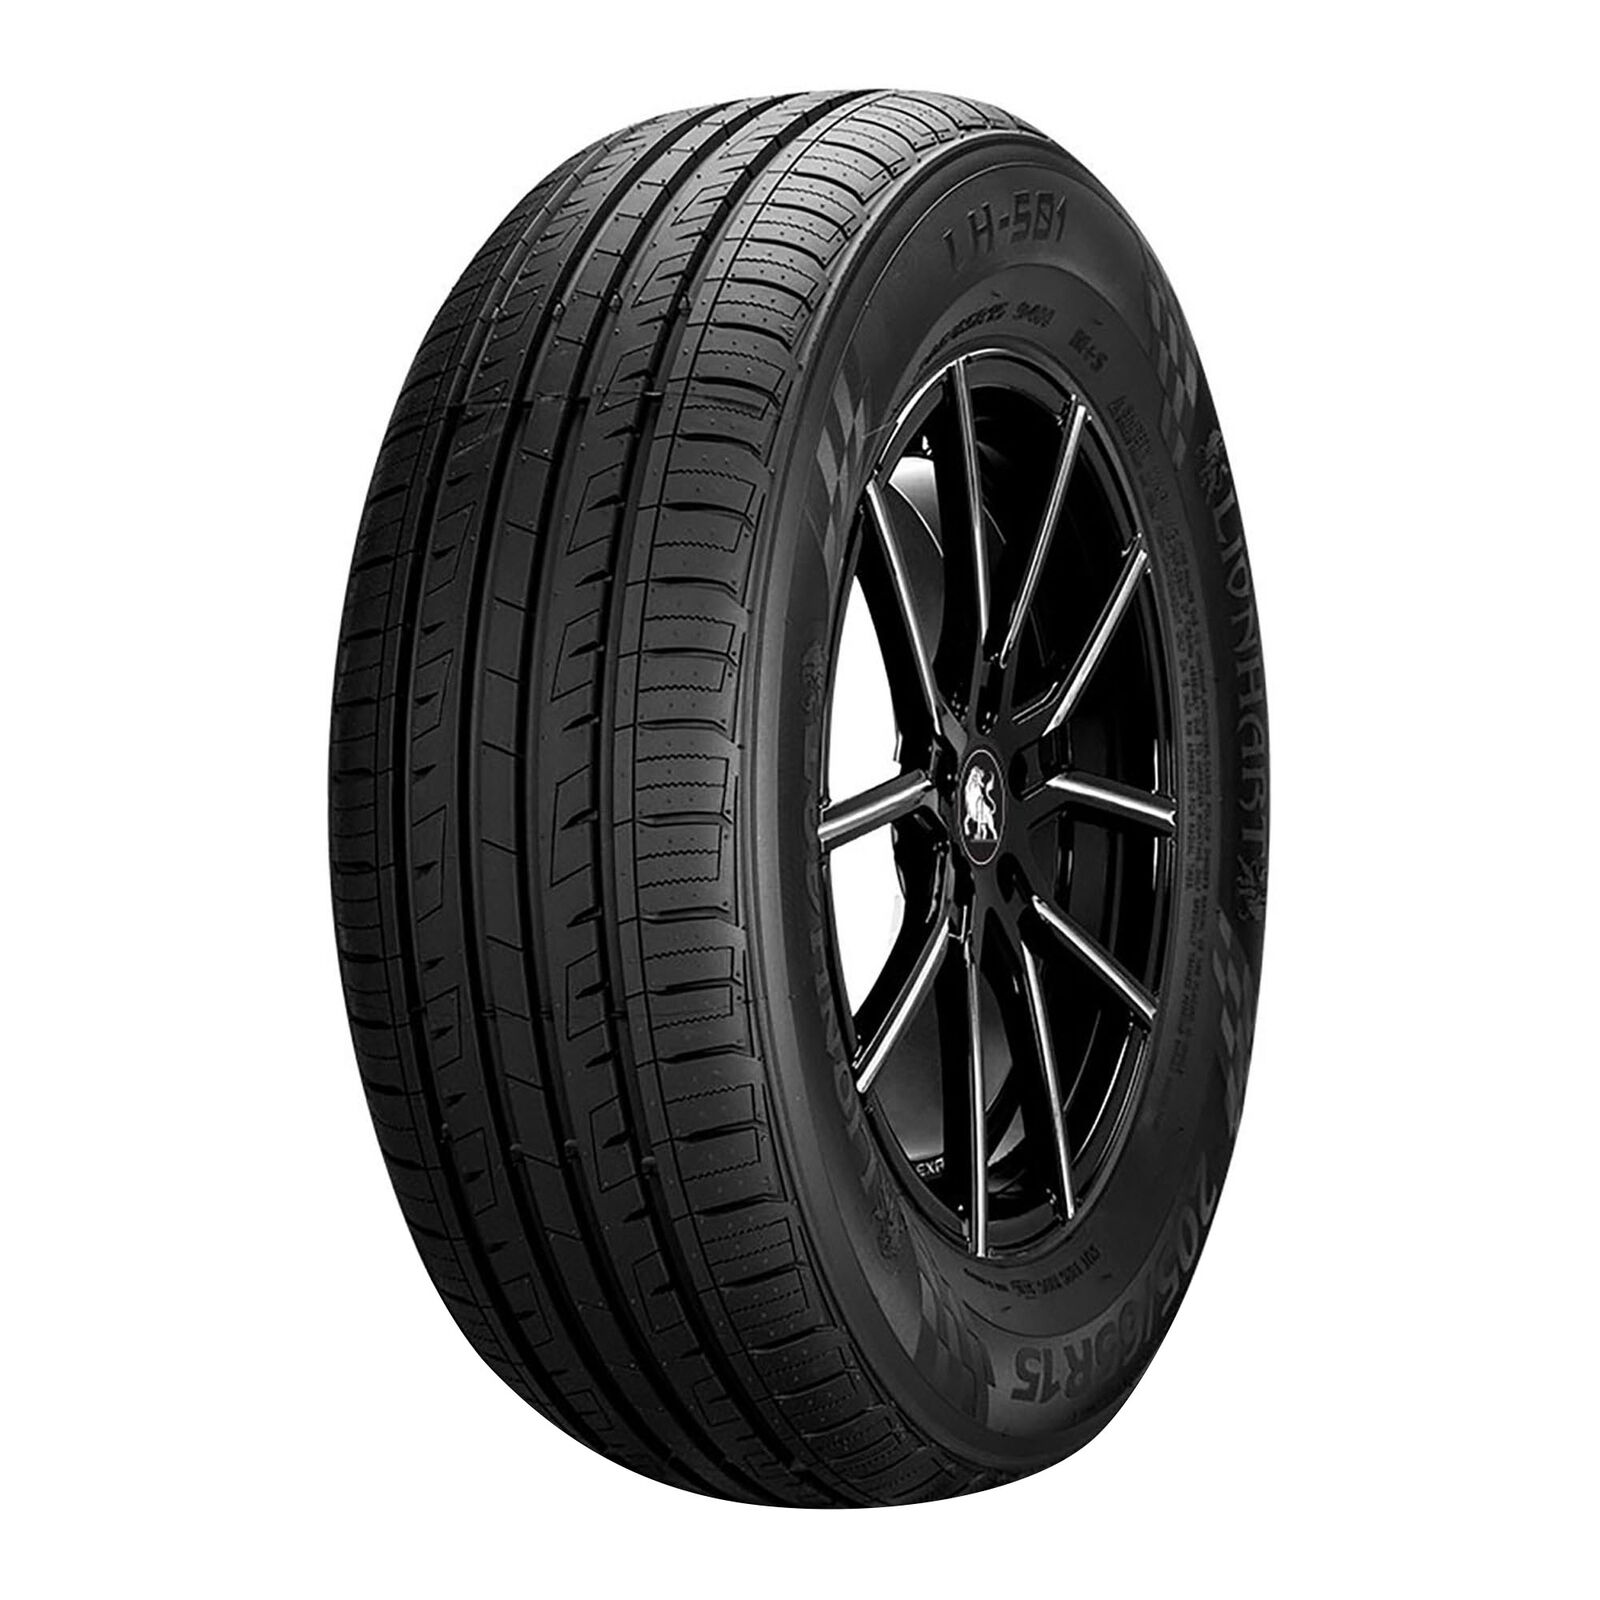 4 New Lionhart Lh-501  - 185/65r15 Tires 1856515 185 65 15